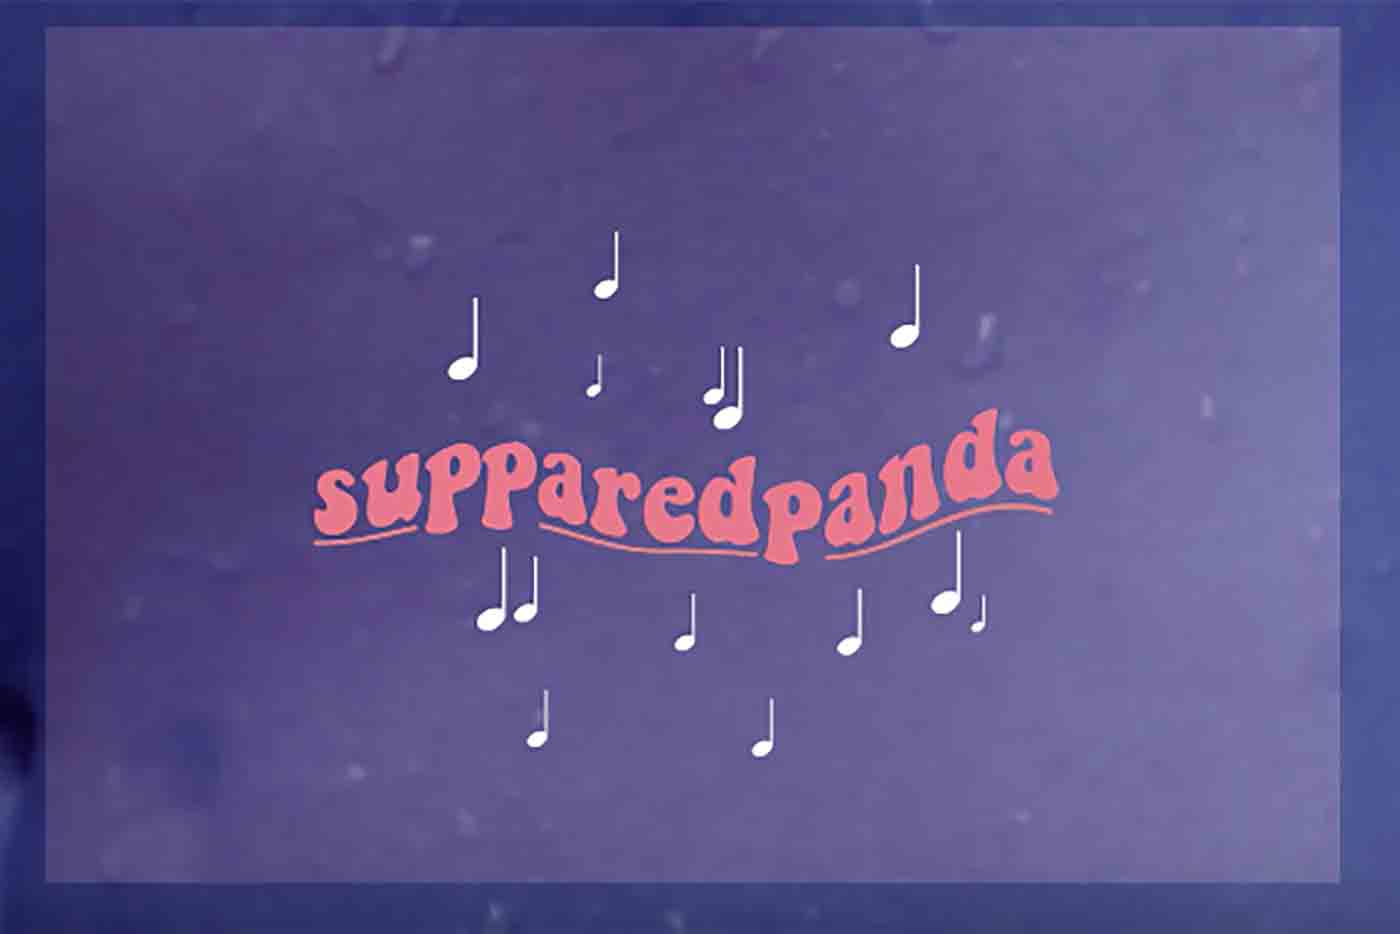 Supparedpanda estrena Ducha, nuevo single con videoclip